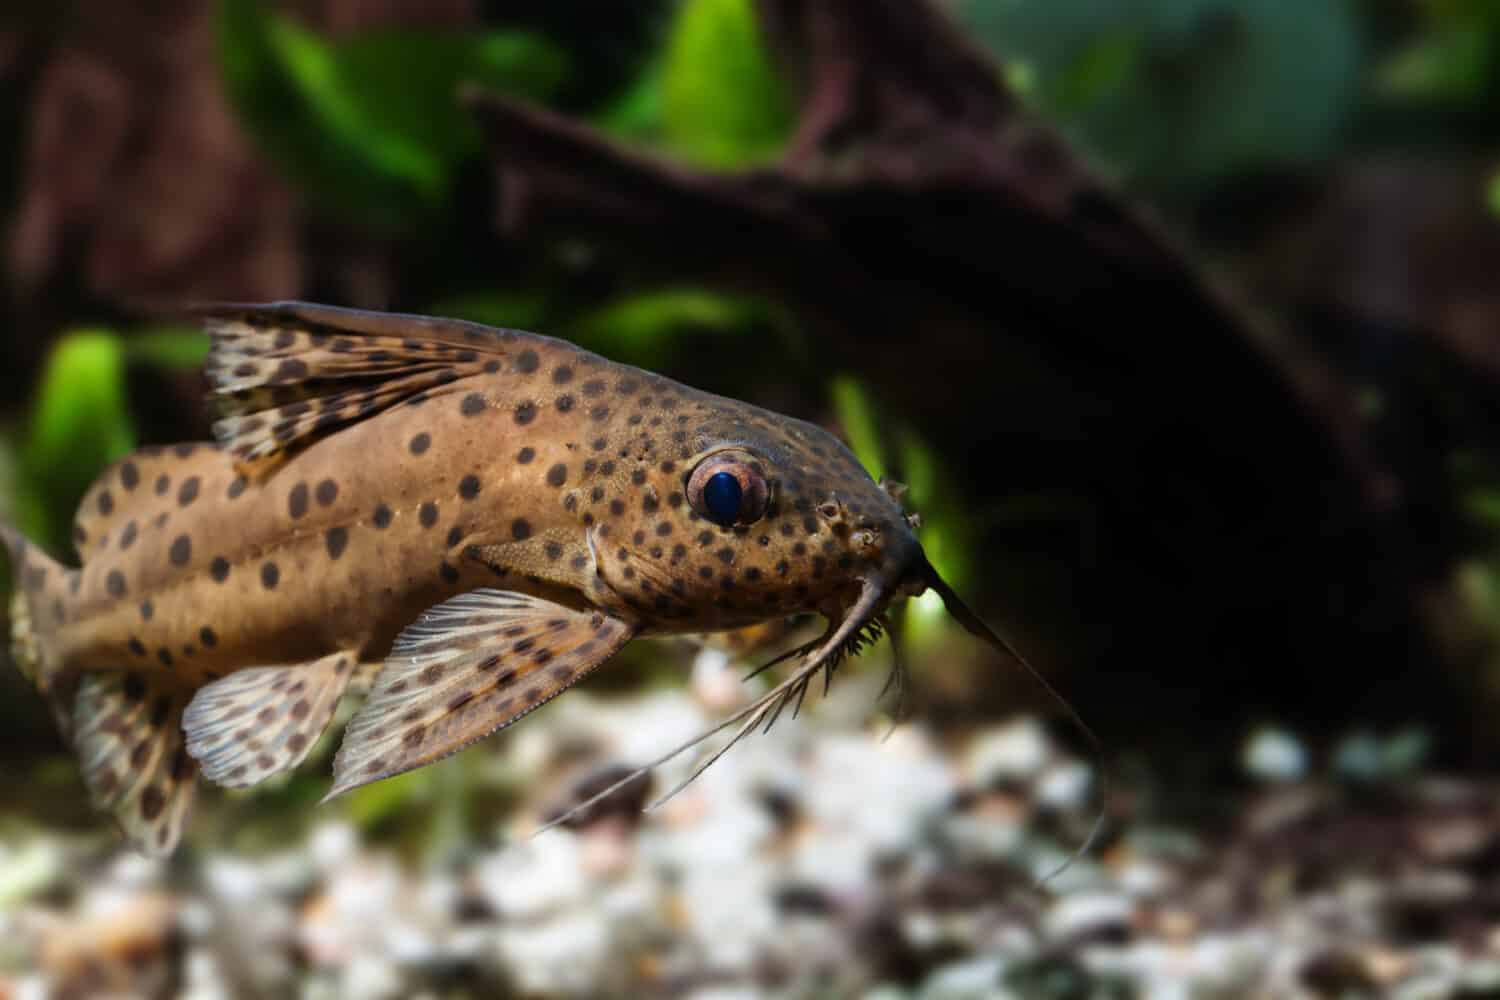 Pesce gatto tre paia di barbi vista macro.  Synodontis nigriventris macchiato pesce predatore africano capovolto, camuffamento della pelle marrone.  Foto di profondità di campo.